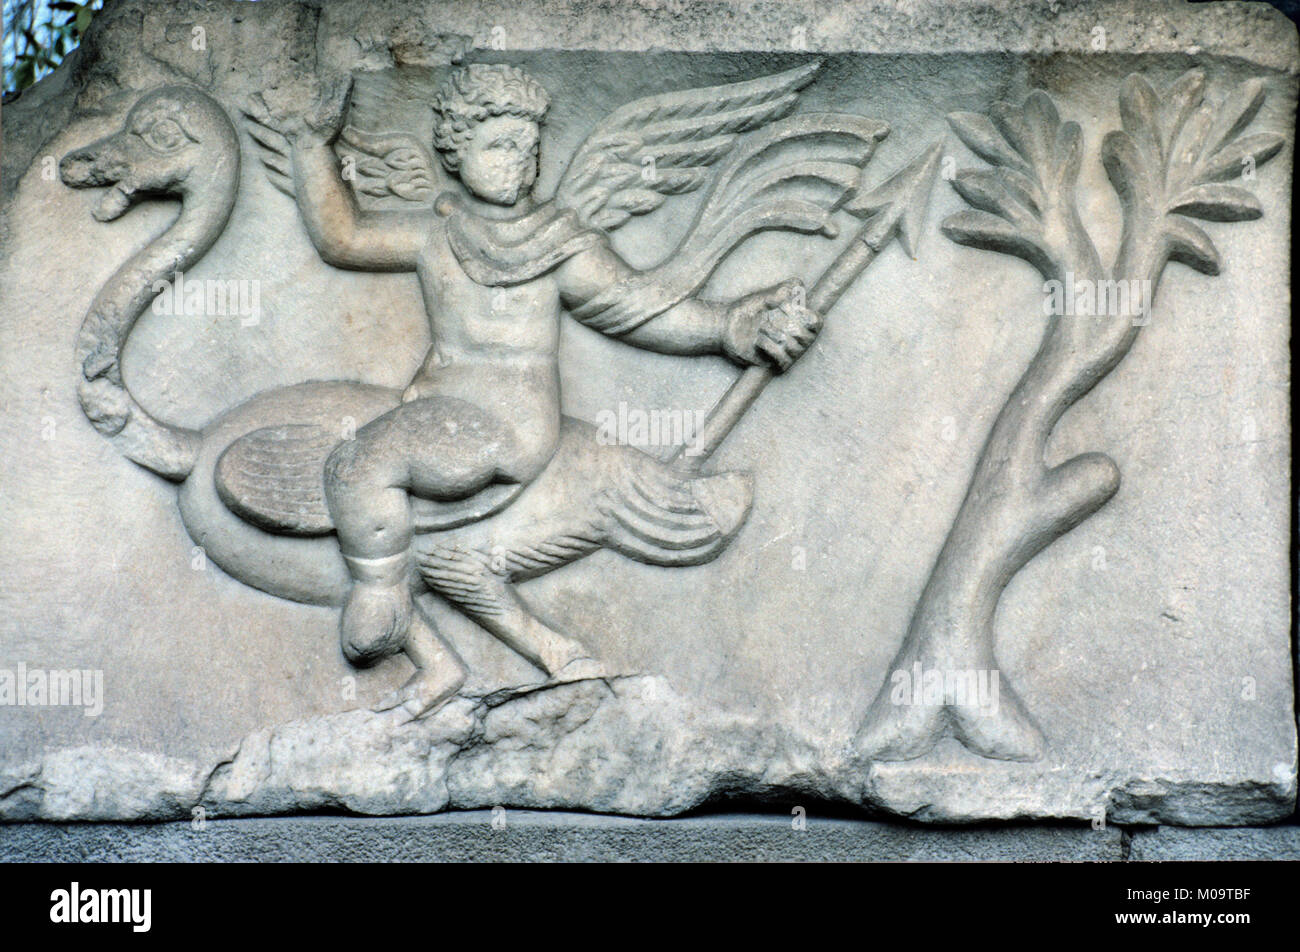 La sculpture sur marbre tombeau gréco-romaine ou sarcophage montrant un ange ailé équitation une autruche, découvert dans la région d'Izmir de l'ouest de la Turquie Banque D'Images